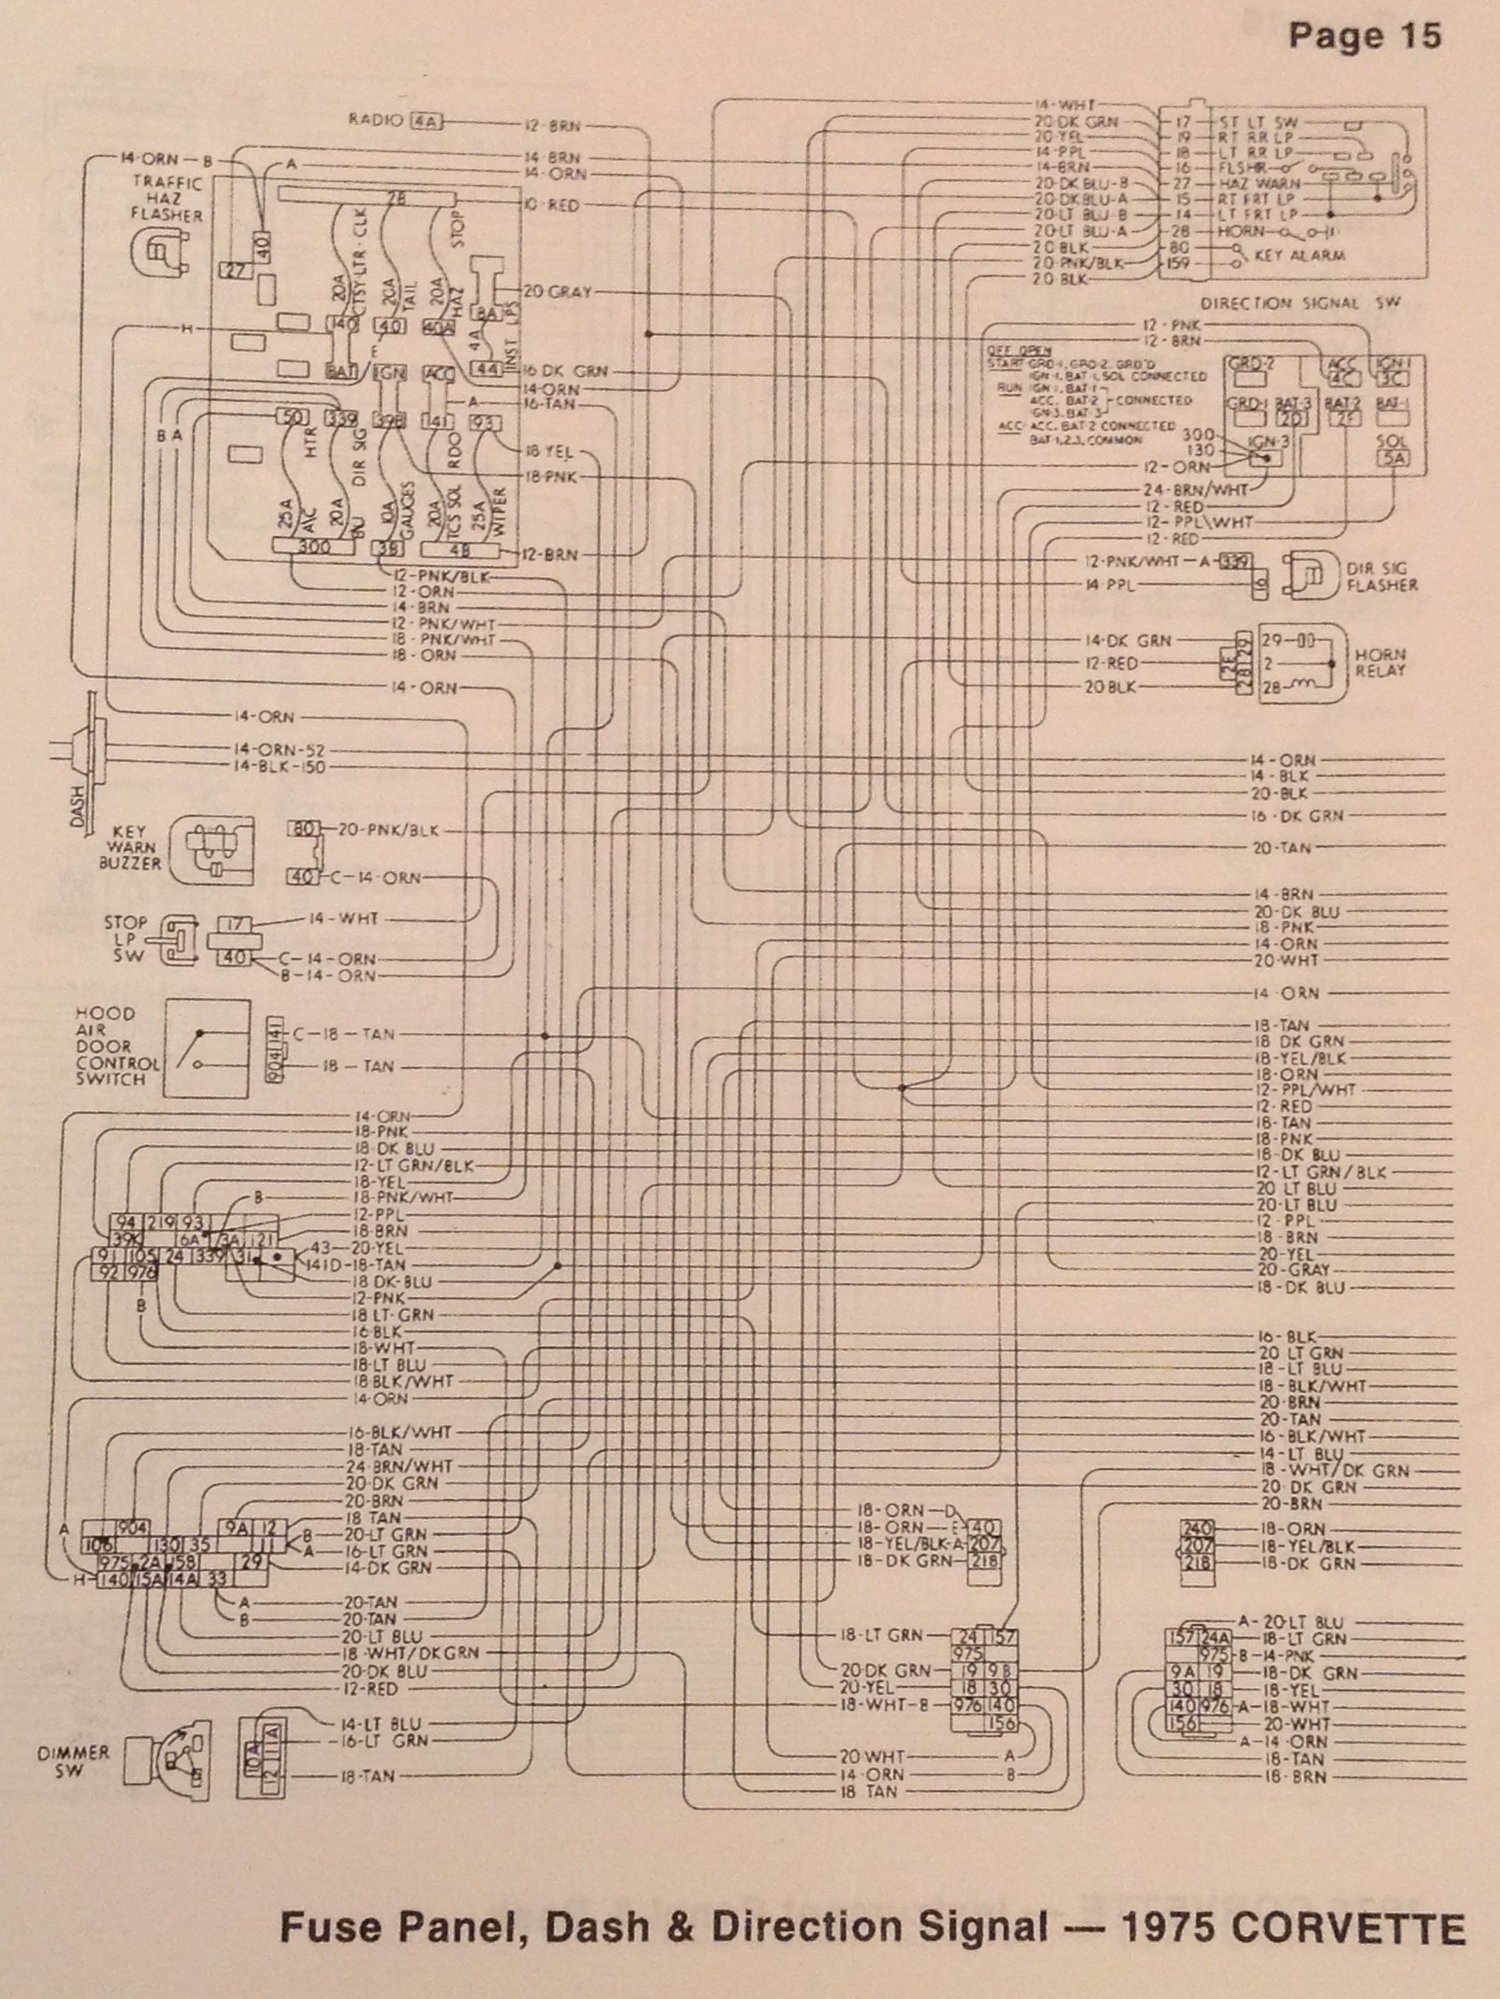 1975 wiring diagram - CorvetteForum - Chevrolet Corvette Forum Discussion